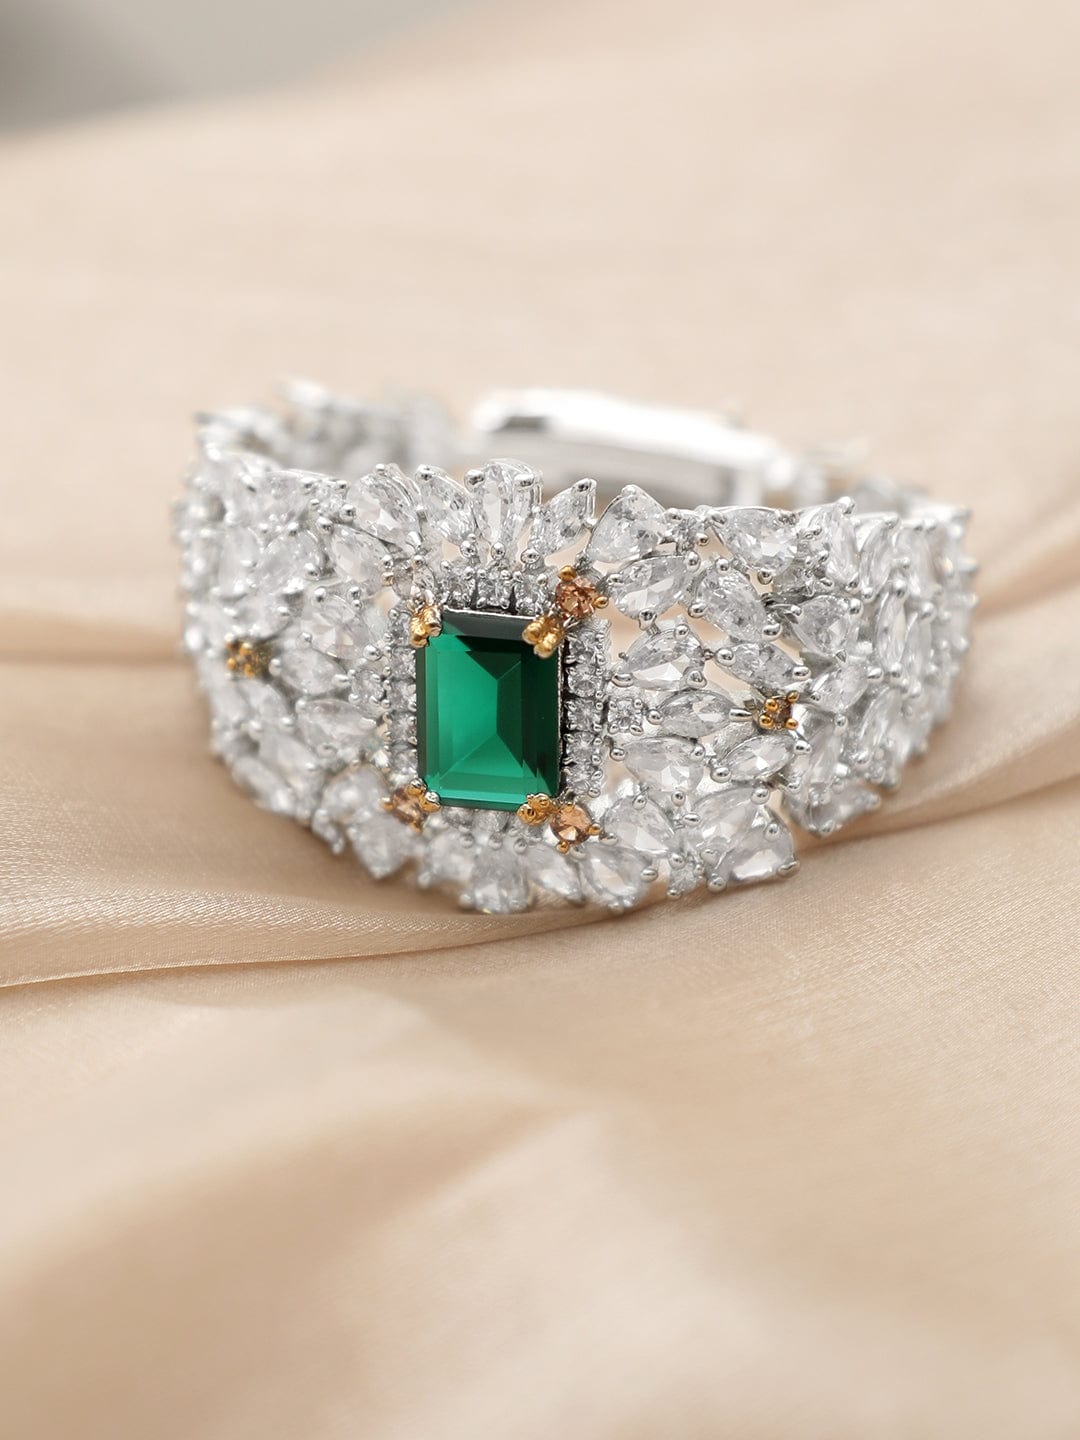 Rubans Rhodium plated Emerald Green Doublet Partywear Bracelet Bracelets